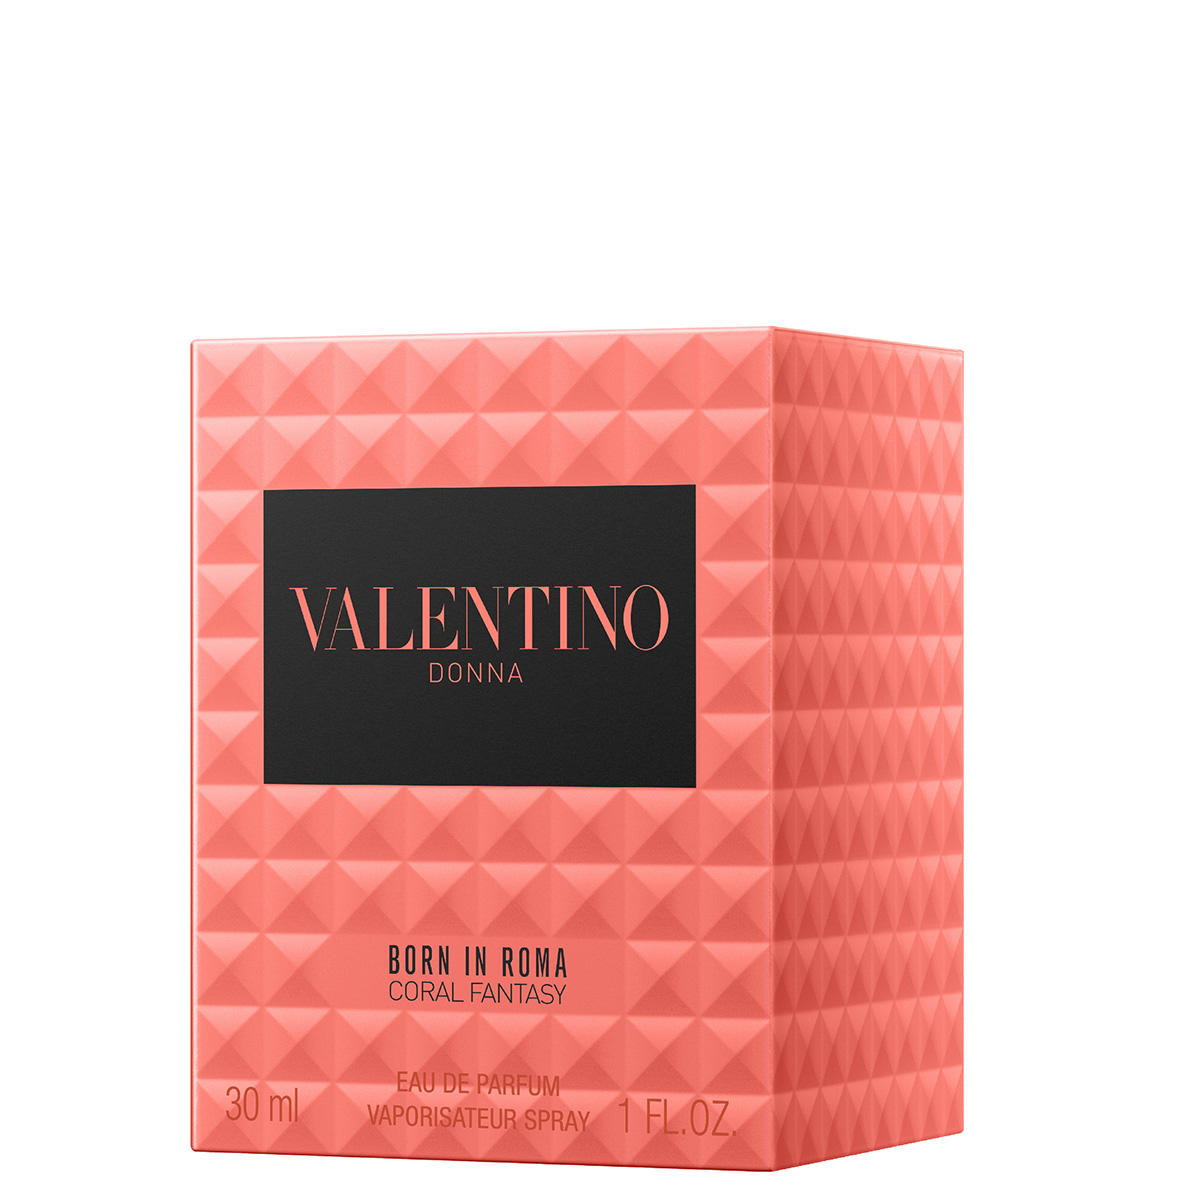 Valentino Donna Born In Roma Coral Fantasy Eau de Parfum 30 ml - 3